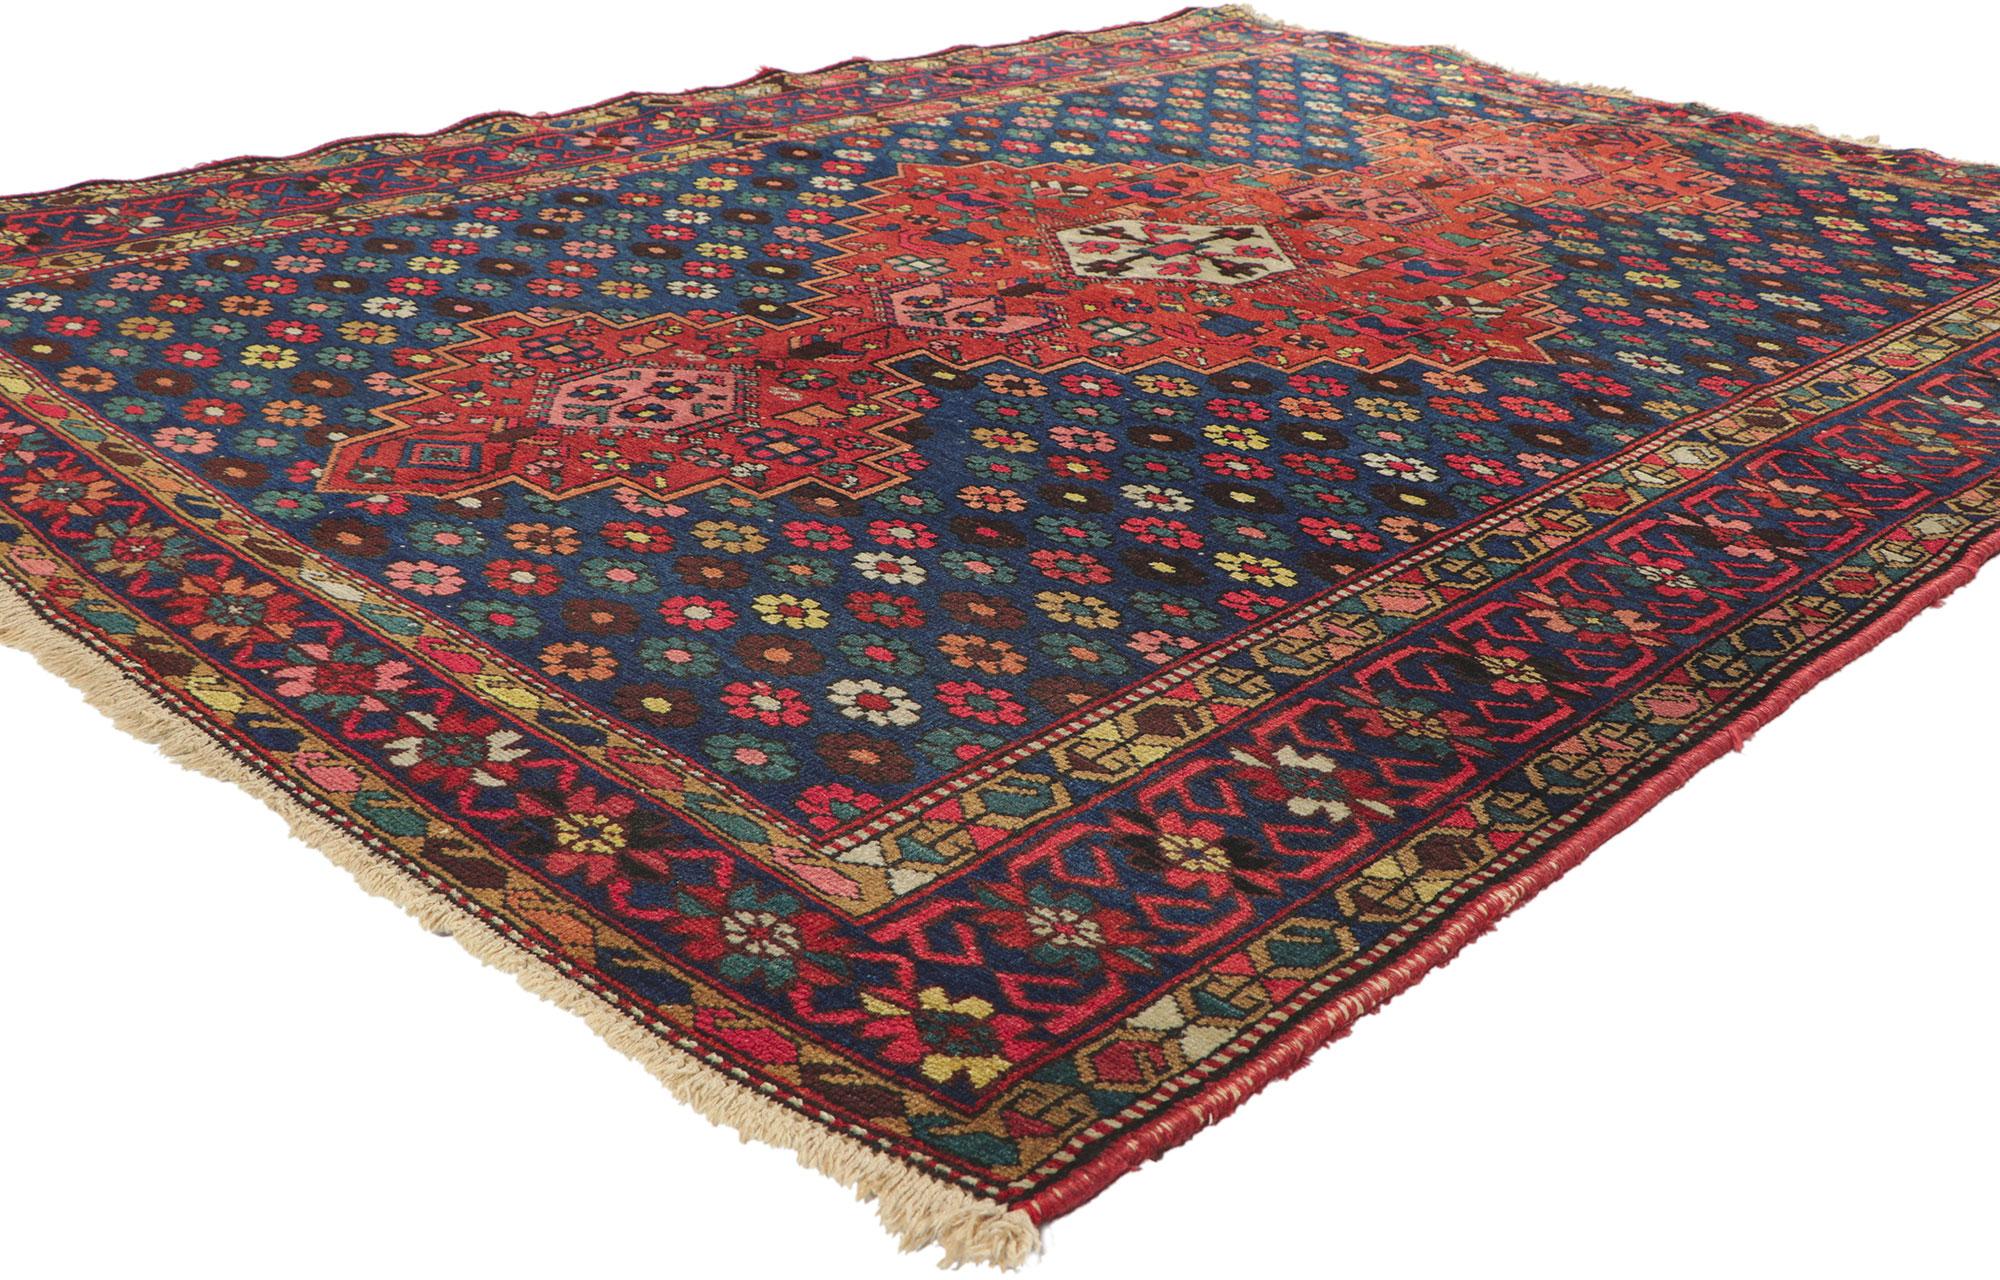 73281 Antiker persischer Bakhtiari-Teppich, 05'05 x 07'01.
Dieser handgeknüpfte, antike persische Bachtiari-Teppich aus Wolle ist königlich und raffiniert. Er wirkt zeitlos und vermittelt ein Gefühl von Wärme und willkommener Ungezwungenheit. Das